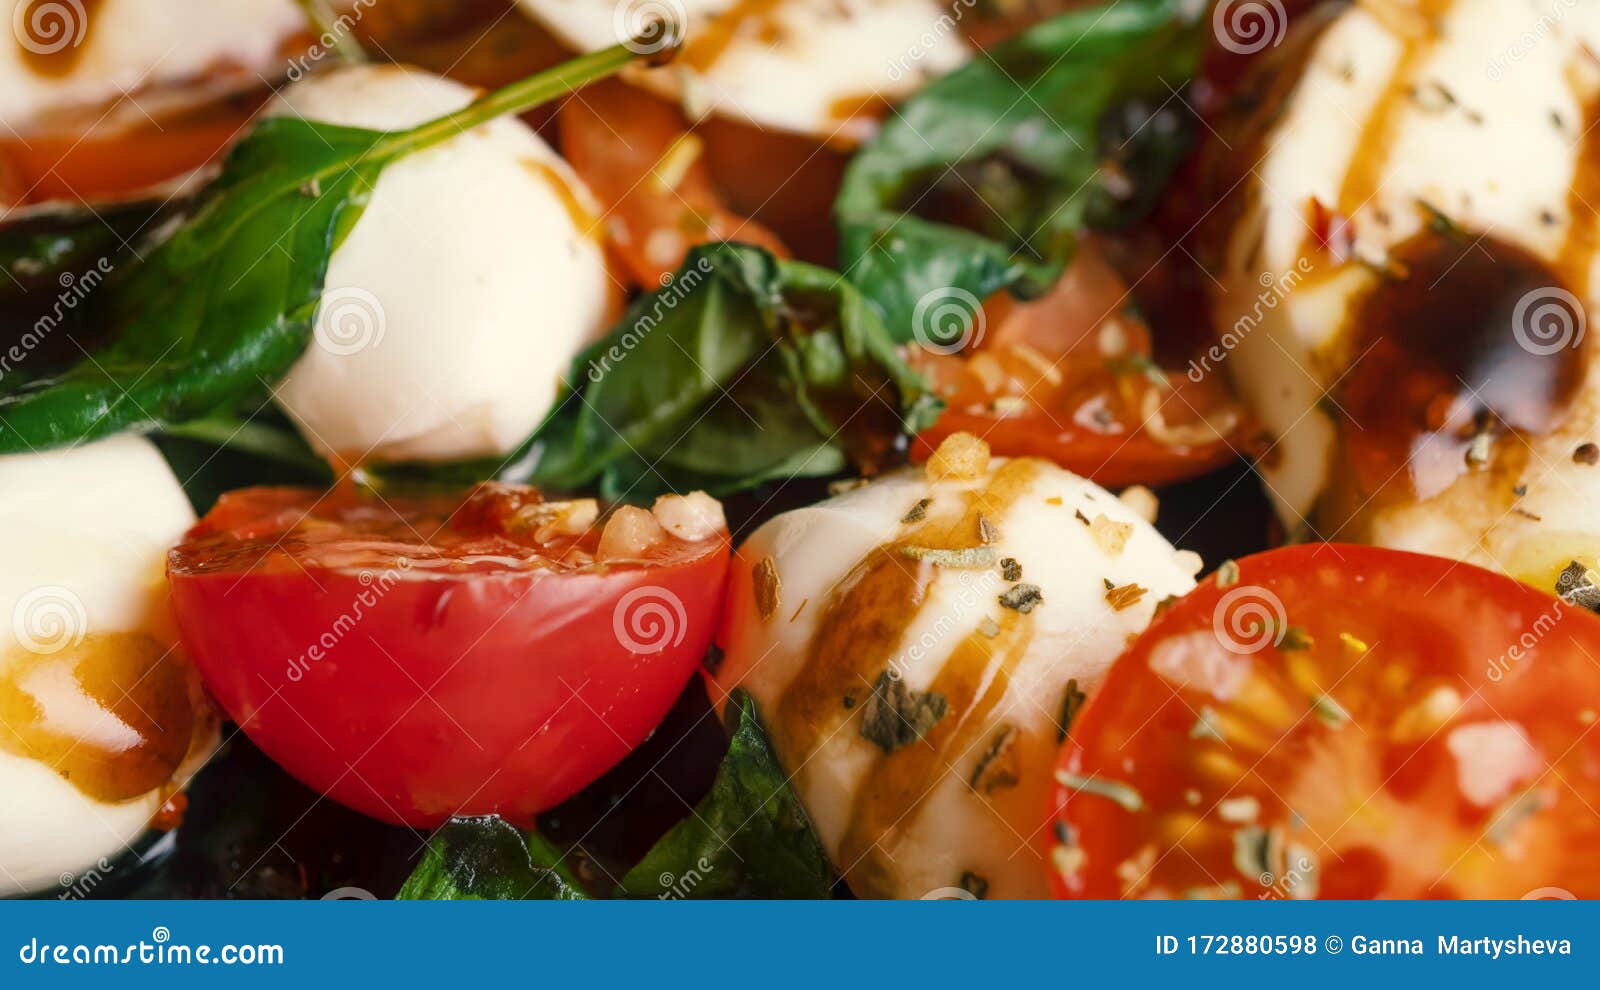 Caprese Pasta Recipe, Tomatoes Mozzarella, Caprese, Buffalo Mozzarella Cheese, Bocconcini, Cherry Tomato Basil, Stock - Image of diet, meal: 172880598